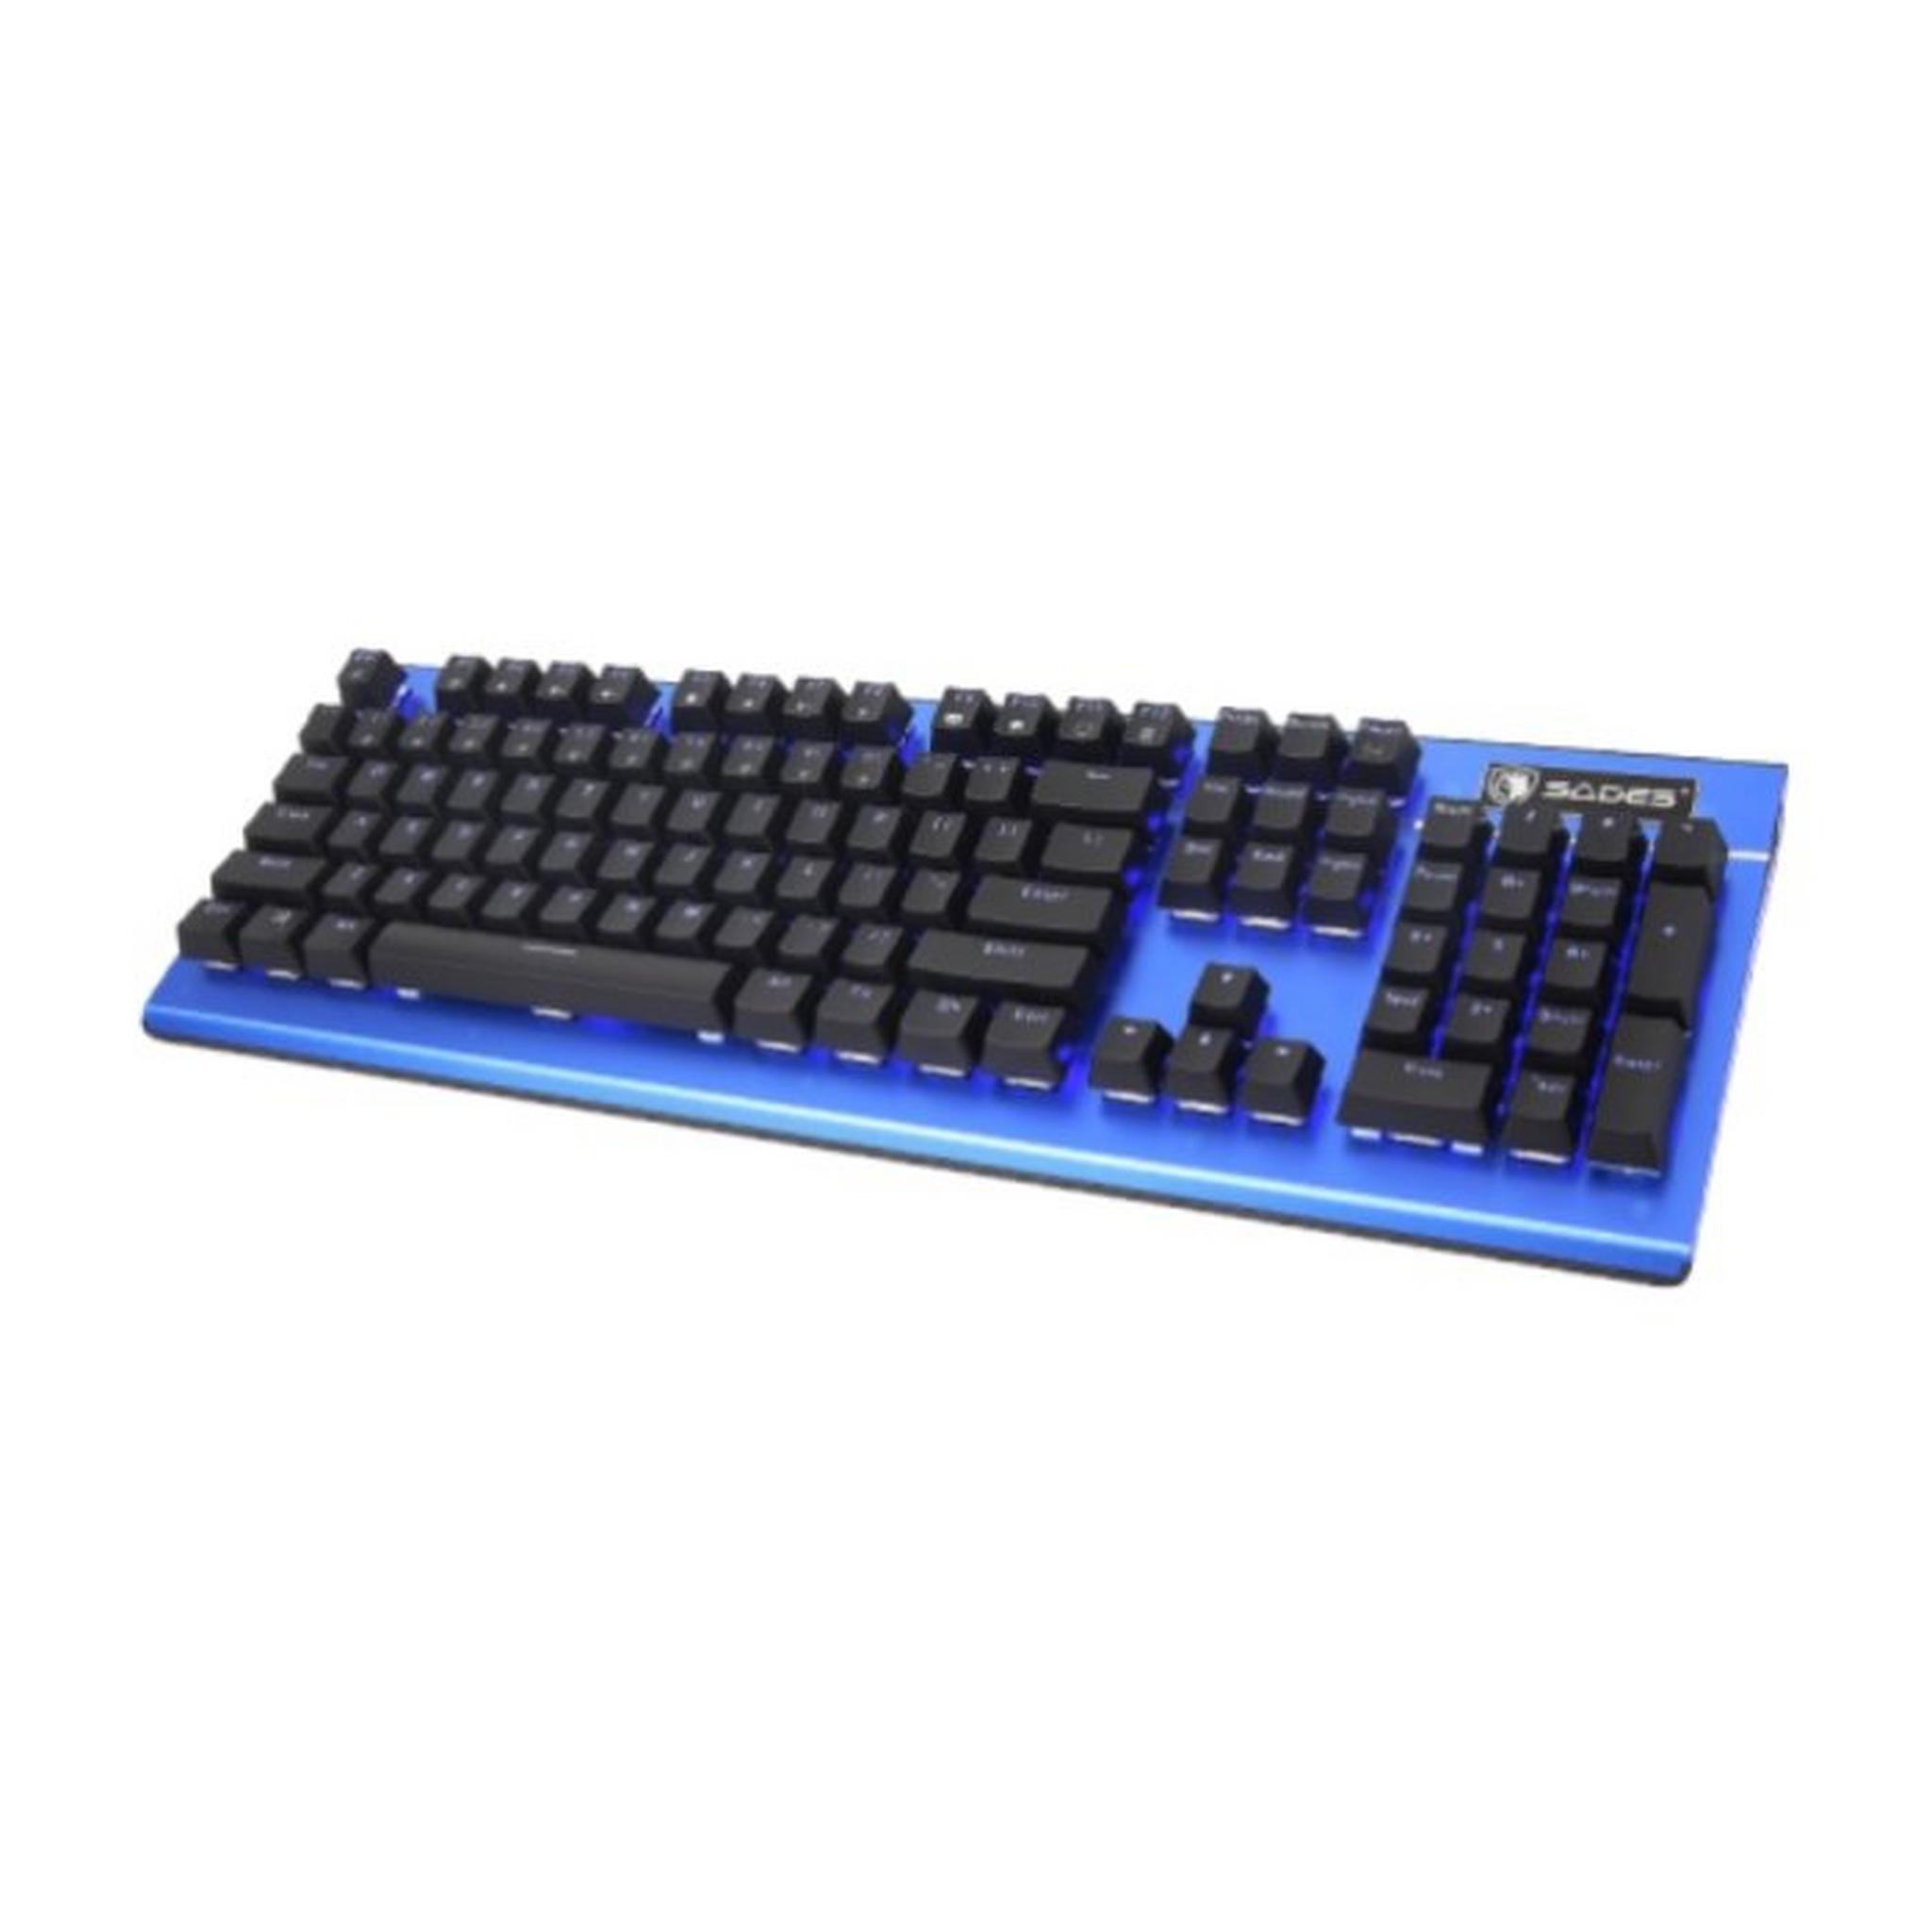 Sades K13 Sickle Mechanical Gaming Keyboard